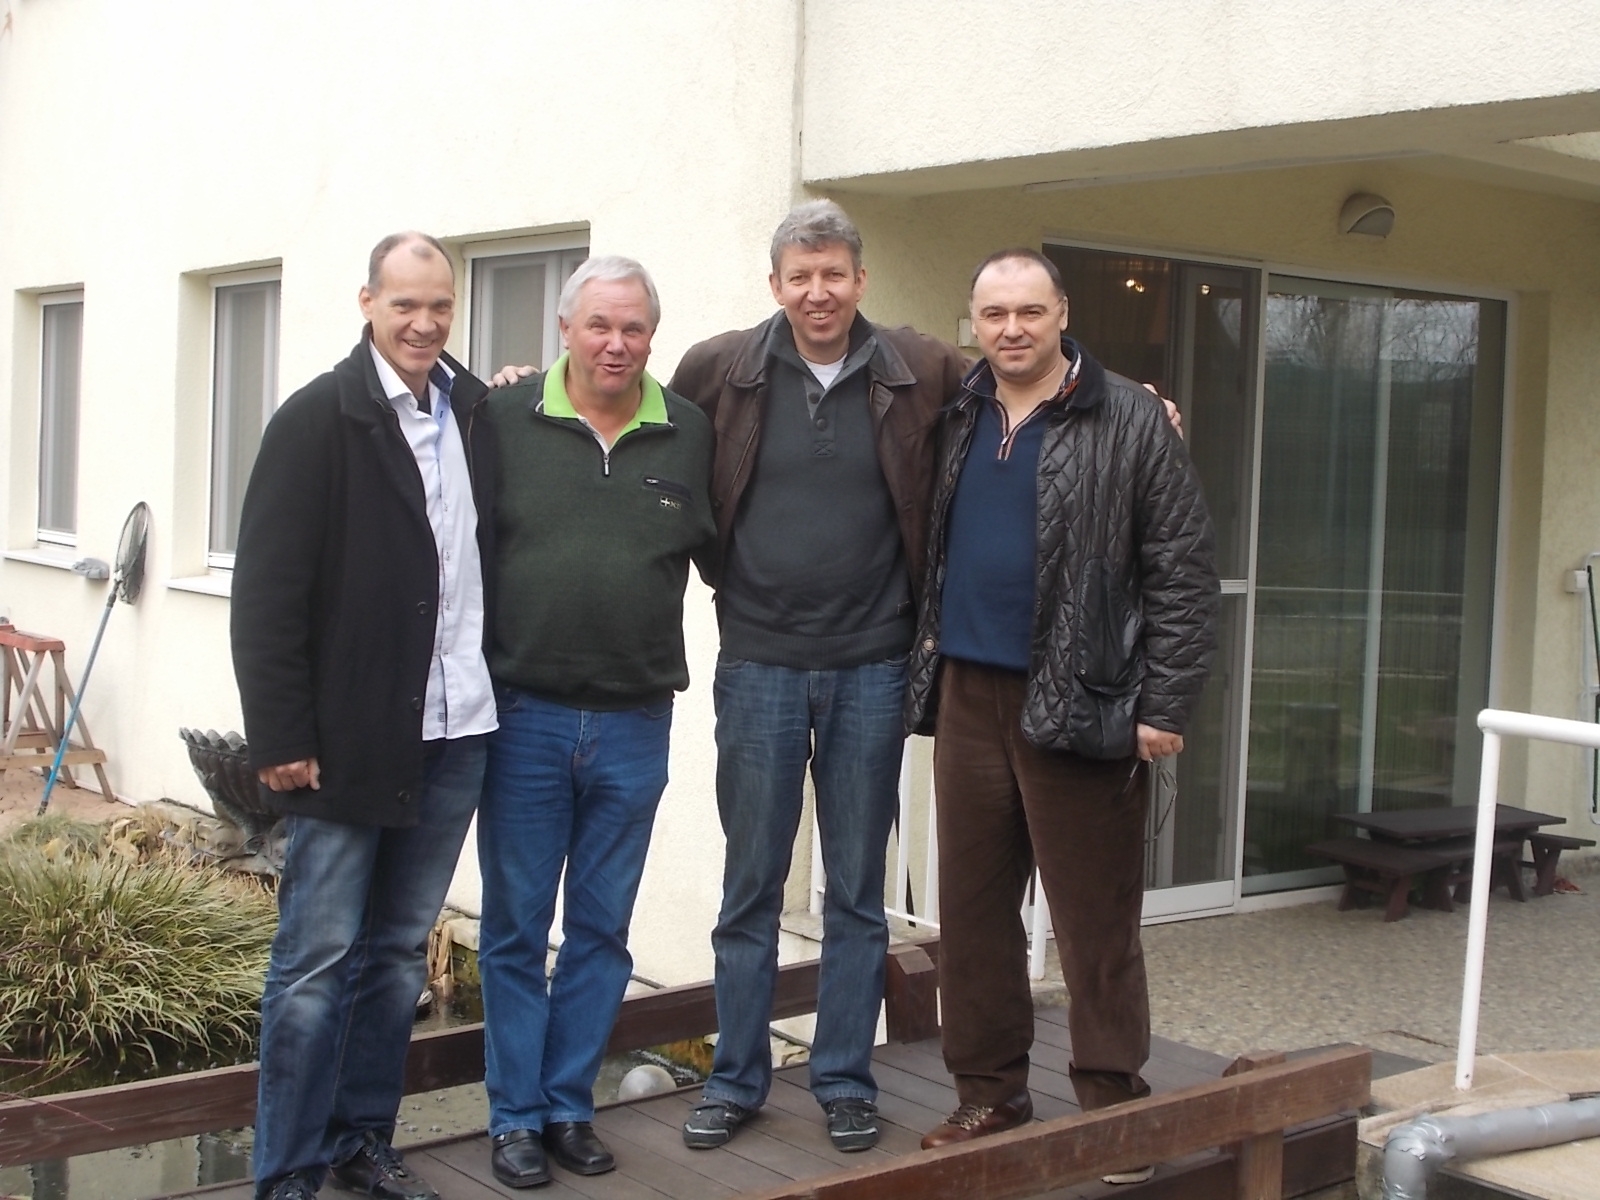 Jan Hooymans, Klaus Stieneker, Vincent van de Kerk and Florea Sorin, in front of Mr. Sorin’s offices